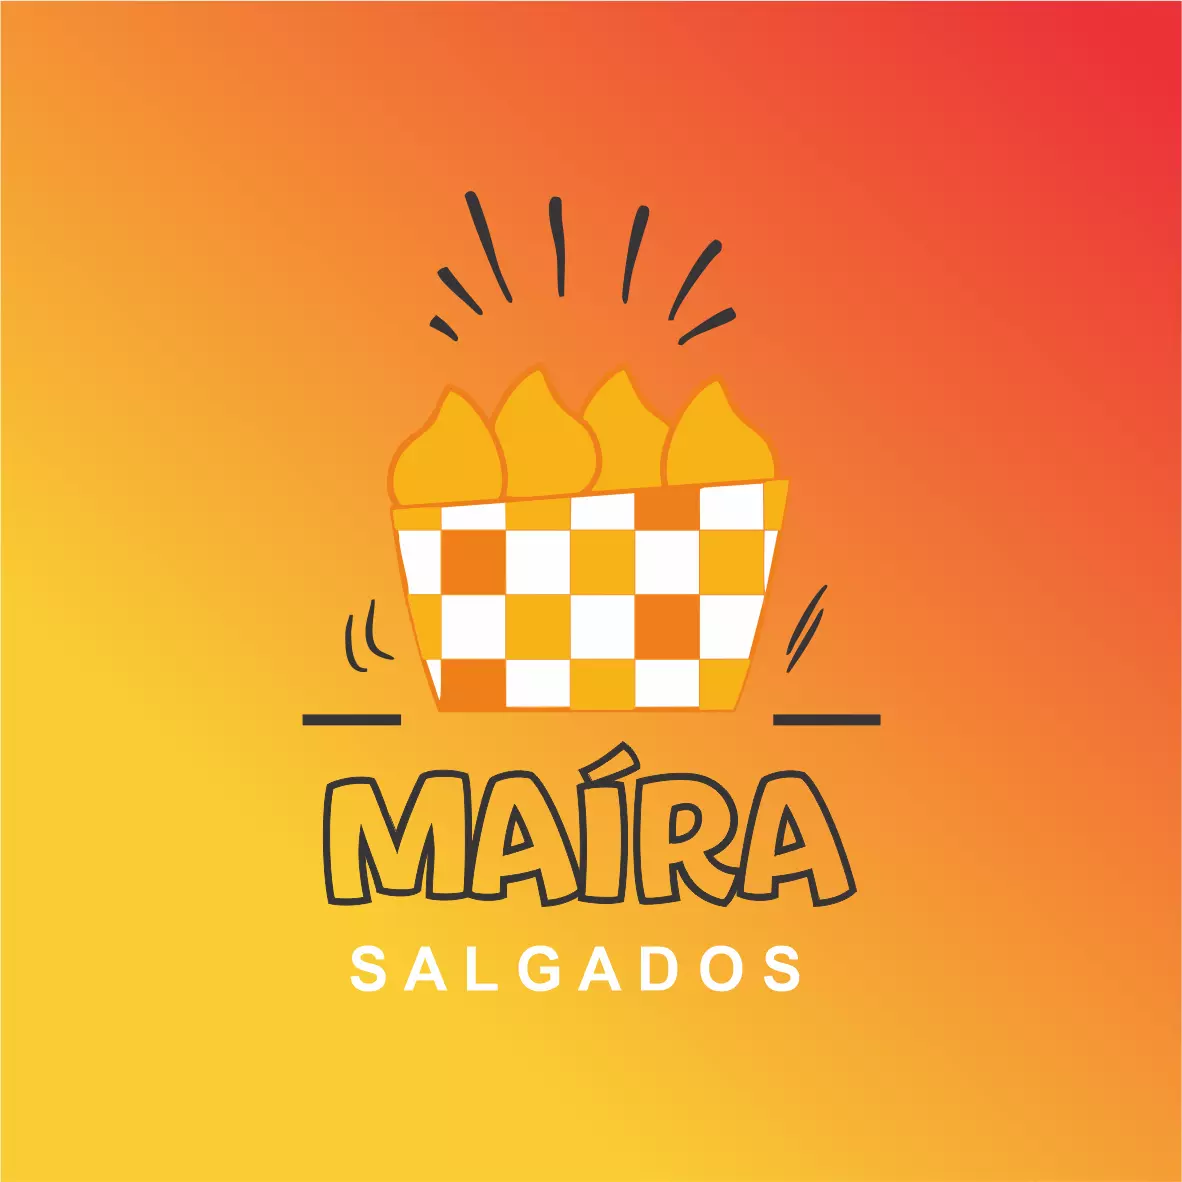 
Logomarca Salgaderia Logotipo para Salgados



